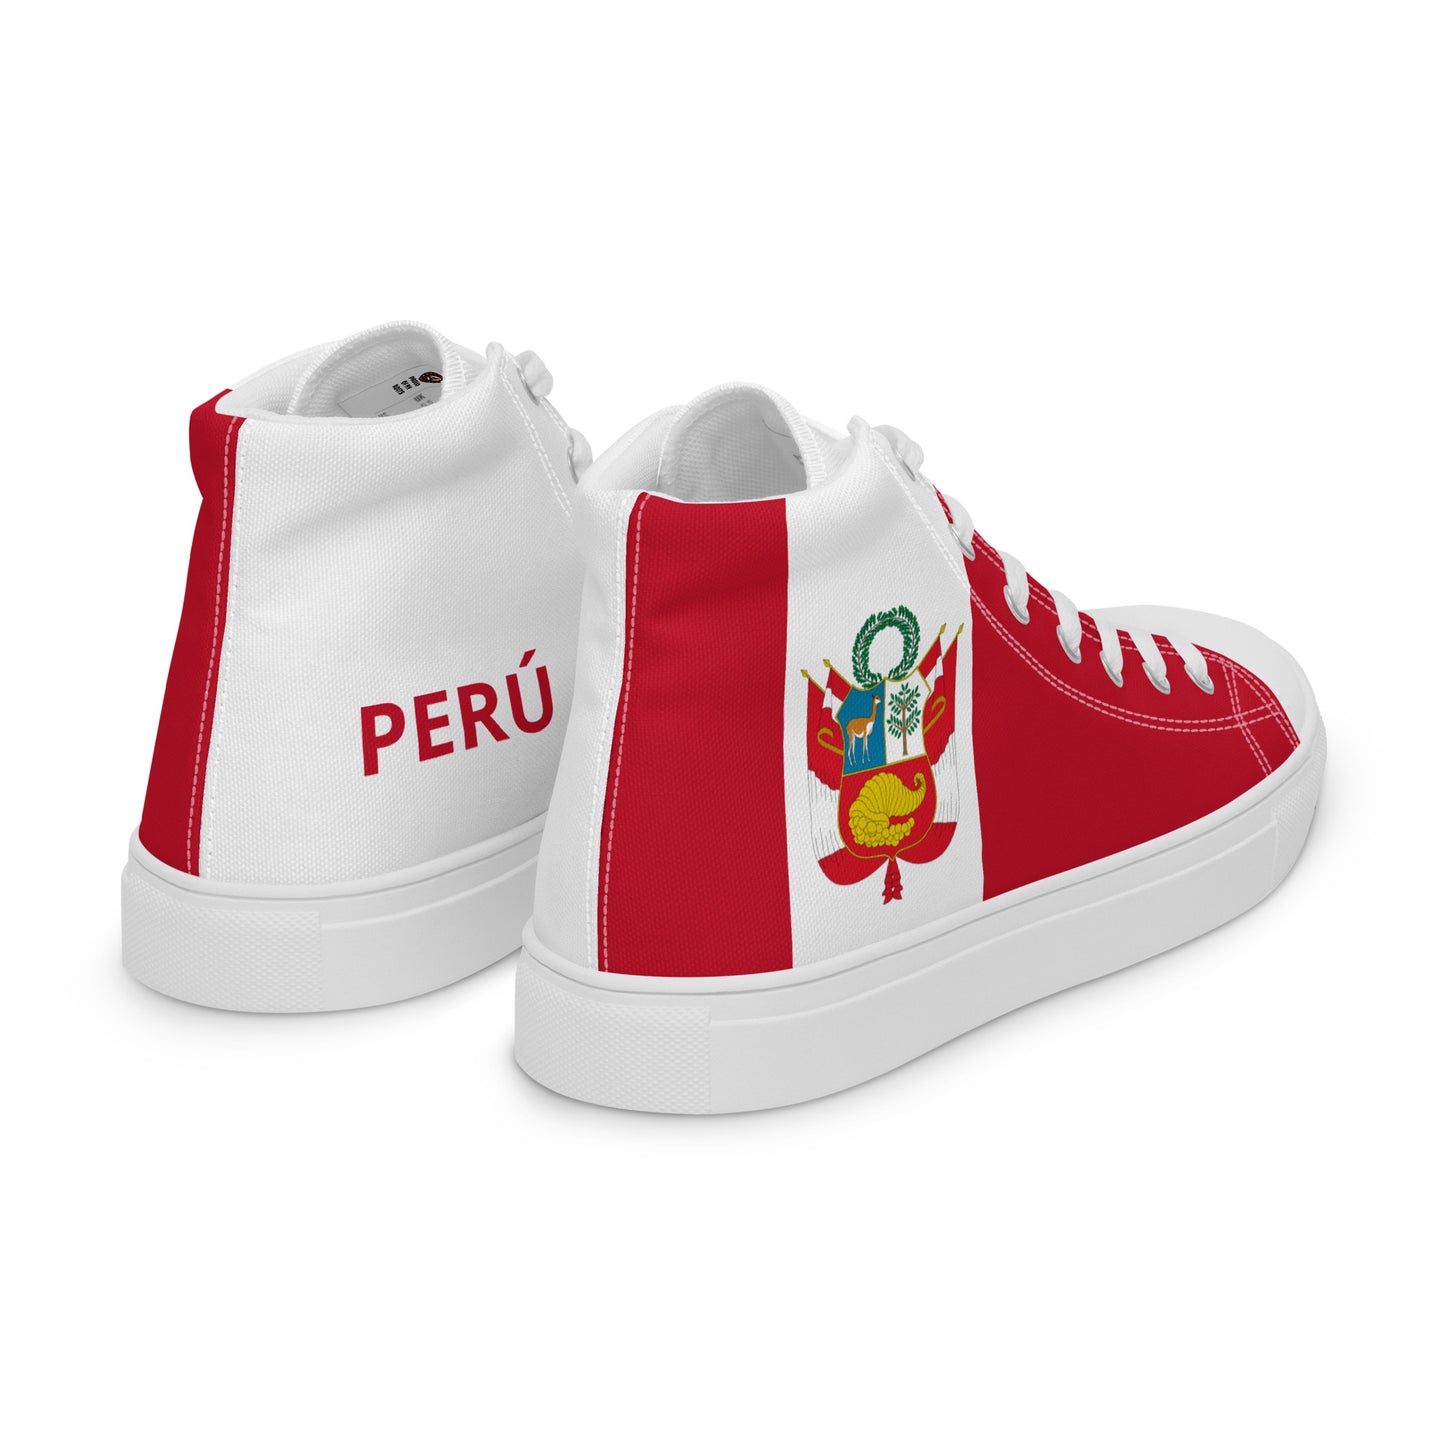 Perú - Women - Bandera - High top shoes